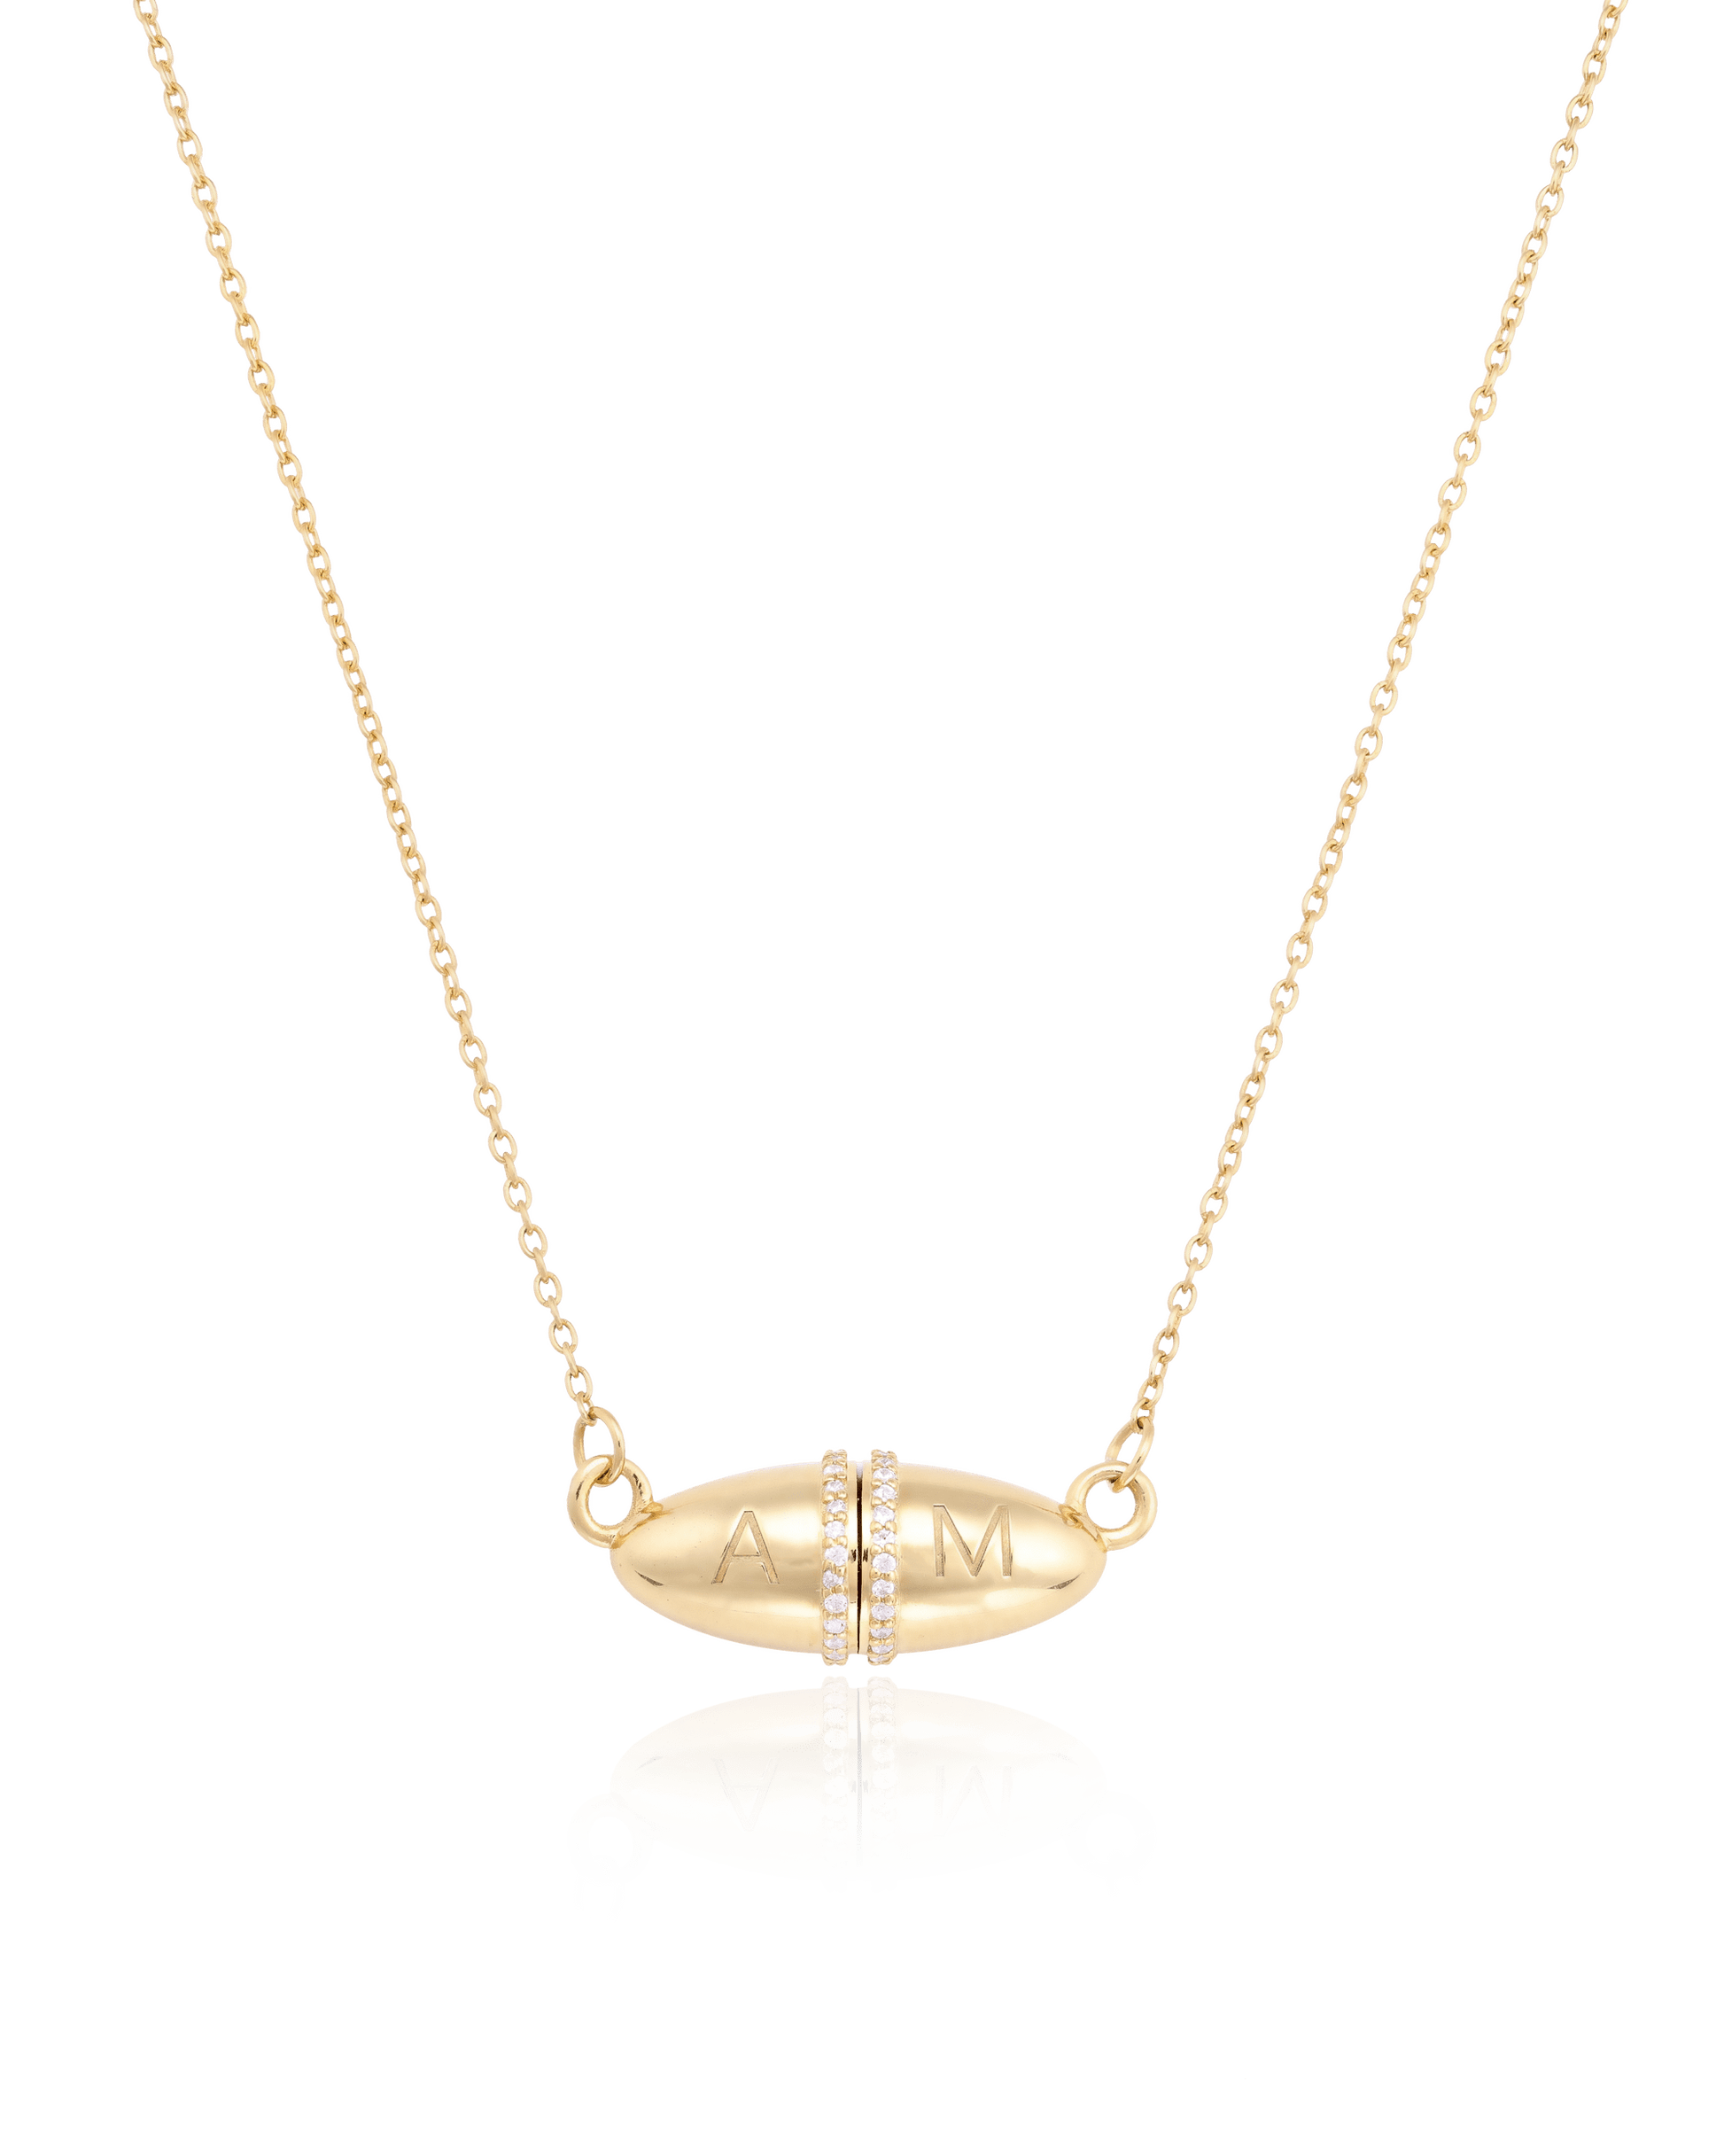 Fabergé Chain Necklace - 18K Gold Vermeil Necklaces magal-dev 16"+ 2" extender 